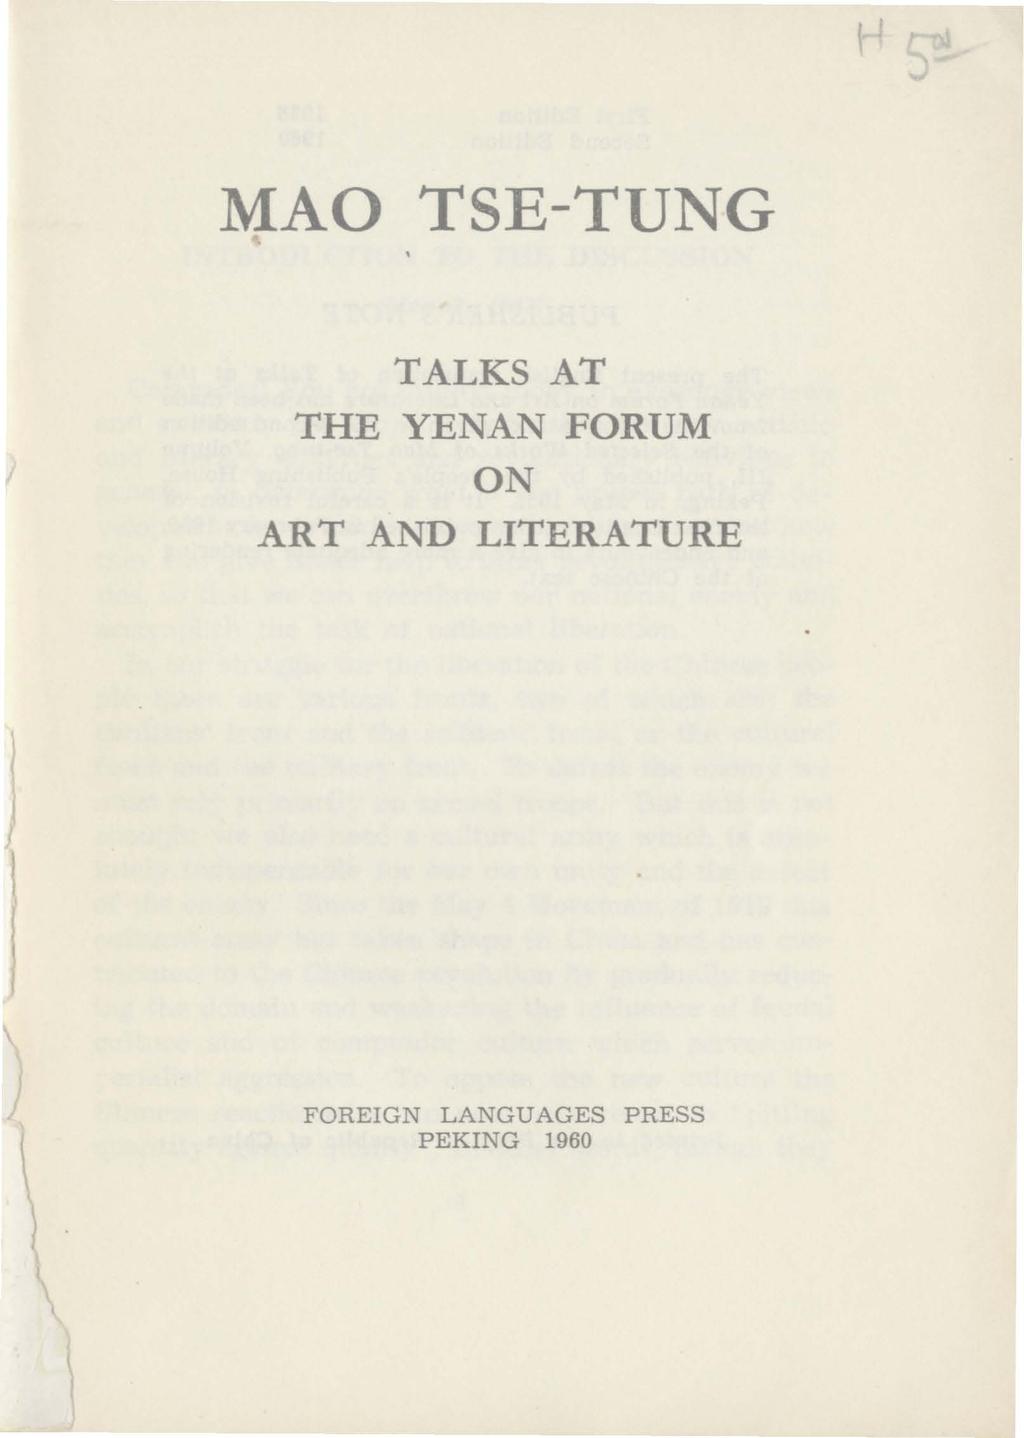 MAO TSE-TUNG TALKS AT THE YENAN FORUM ON ART